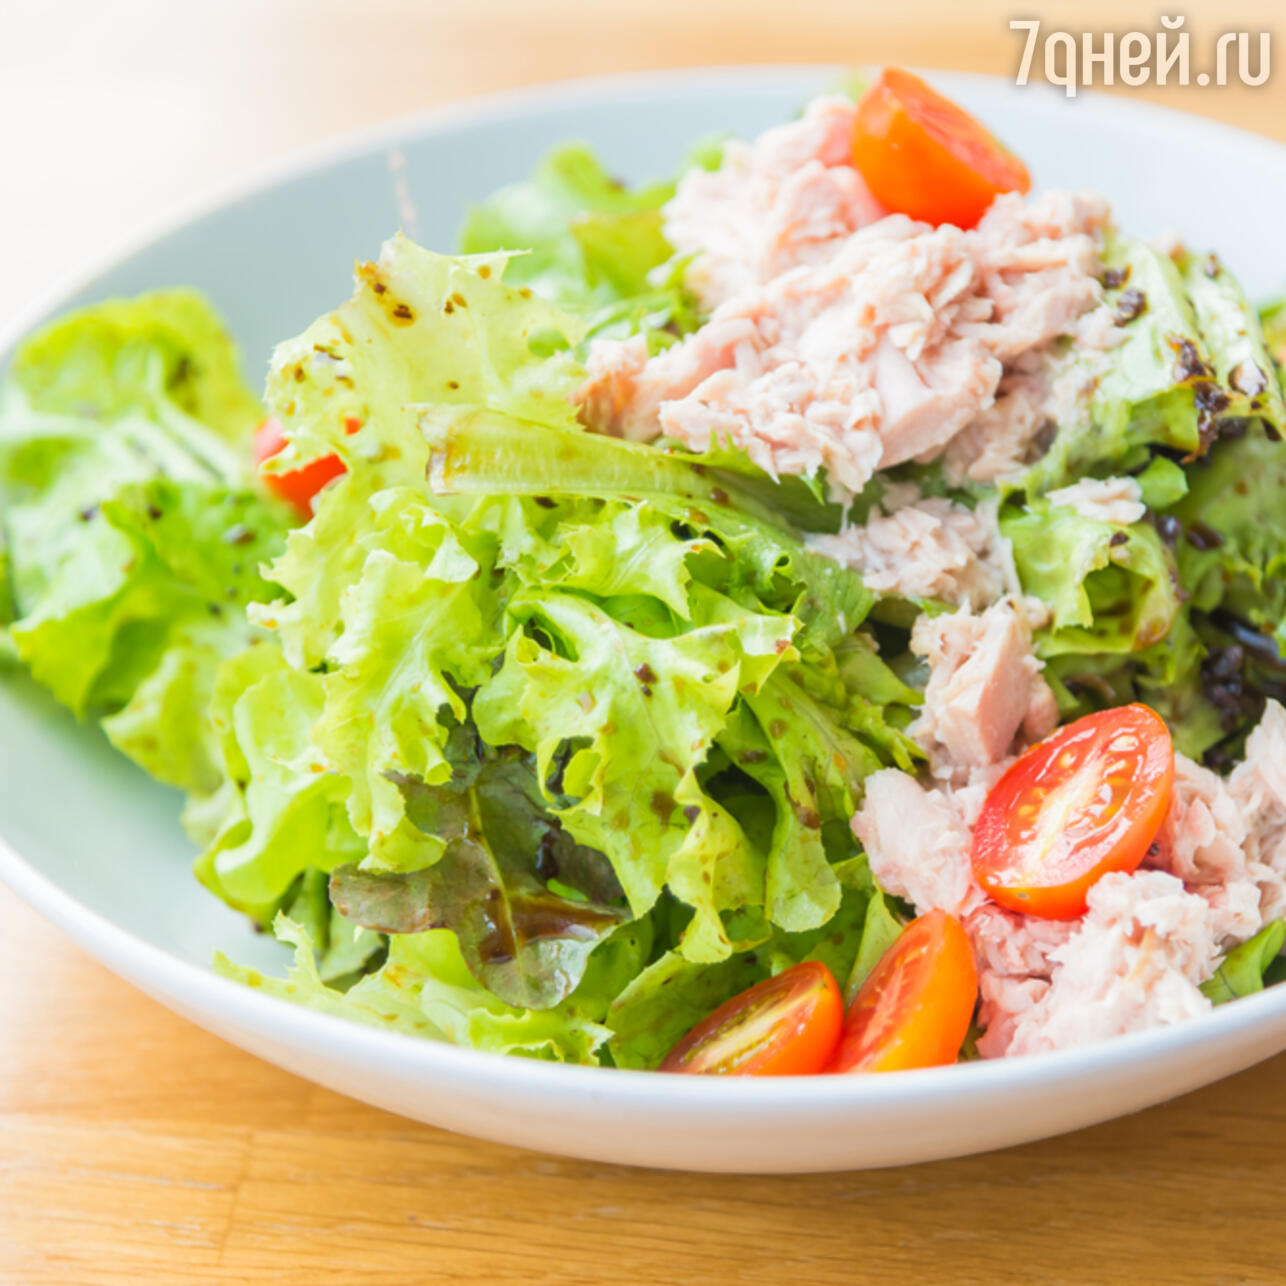 Диетический салат с тунцом, пошаговый рецепт с фото от автора Rita Pirko на ккал